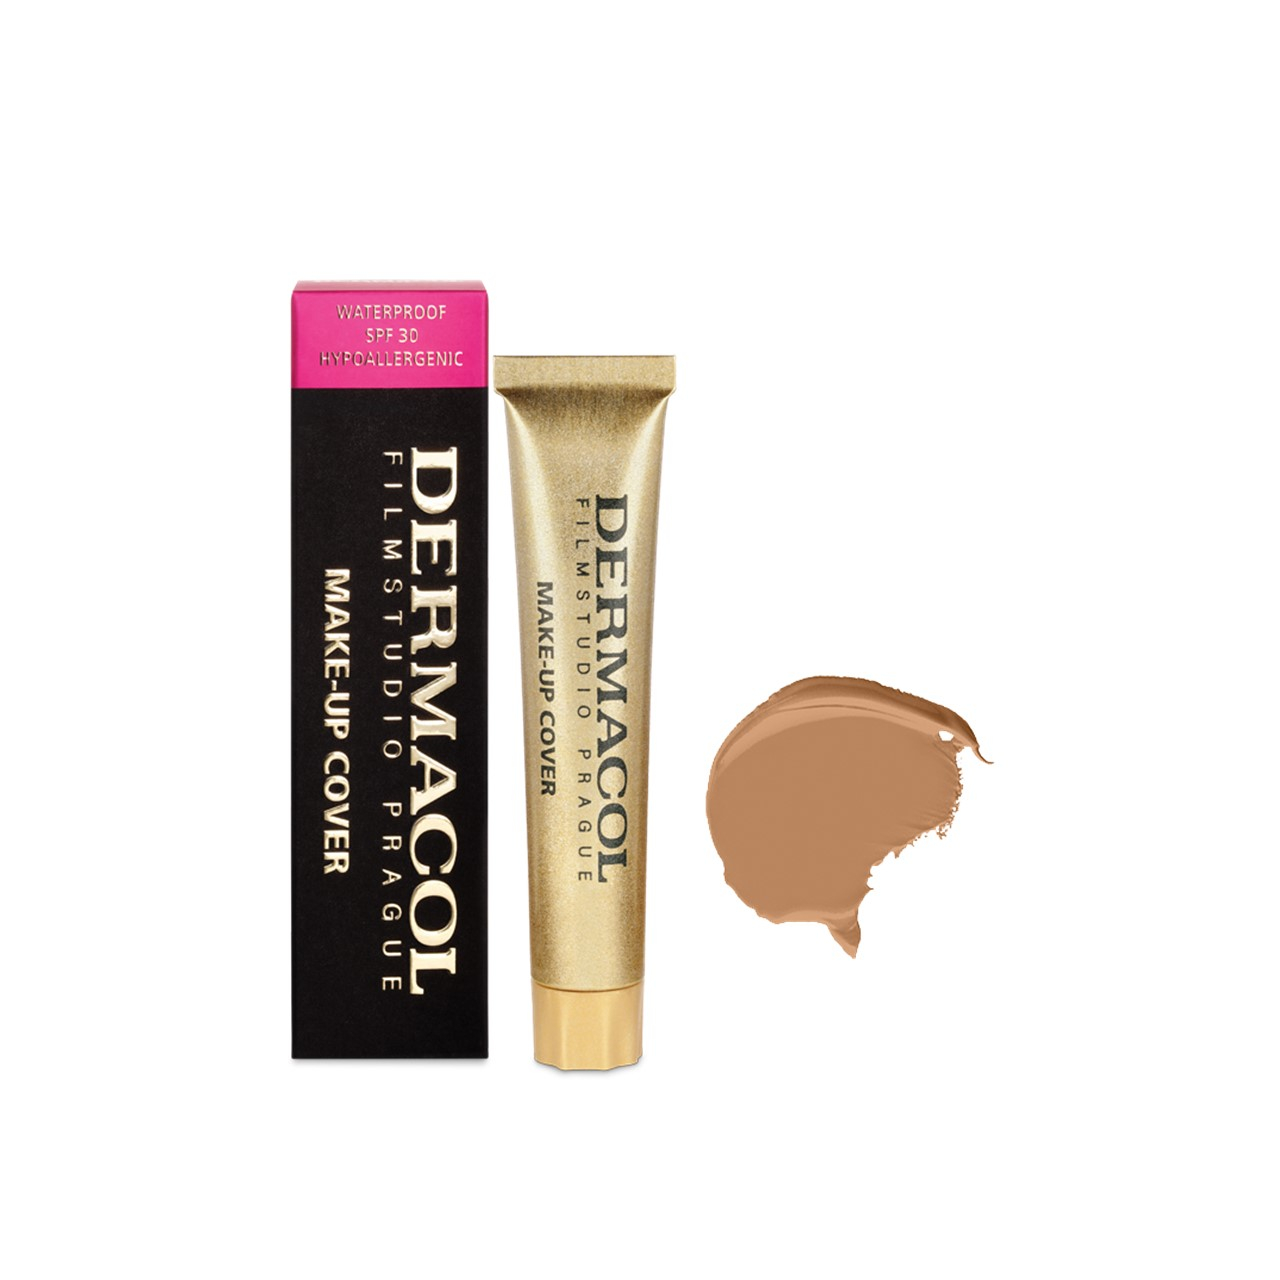 Dermacol Make-Up Cover Foundation SPF30 223 30g (1.06oz)